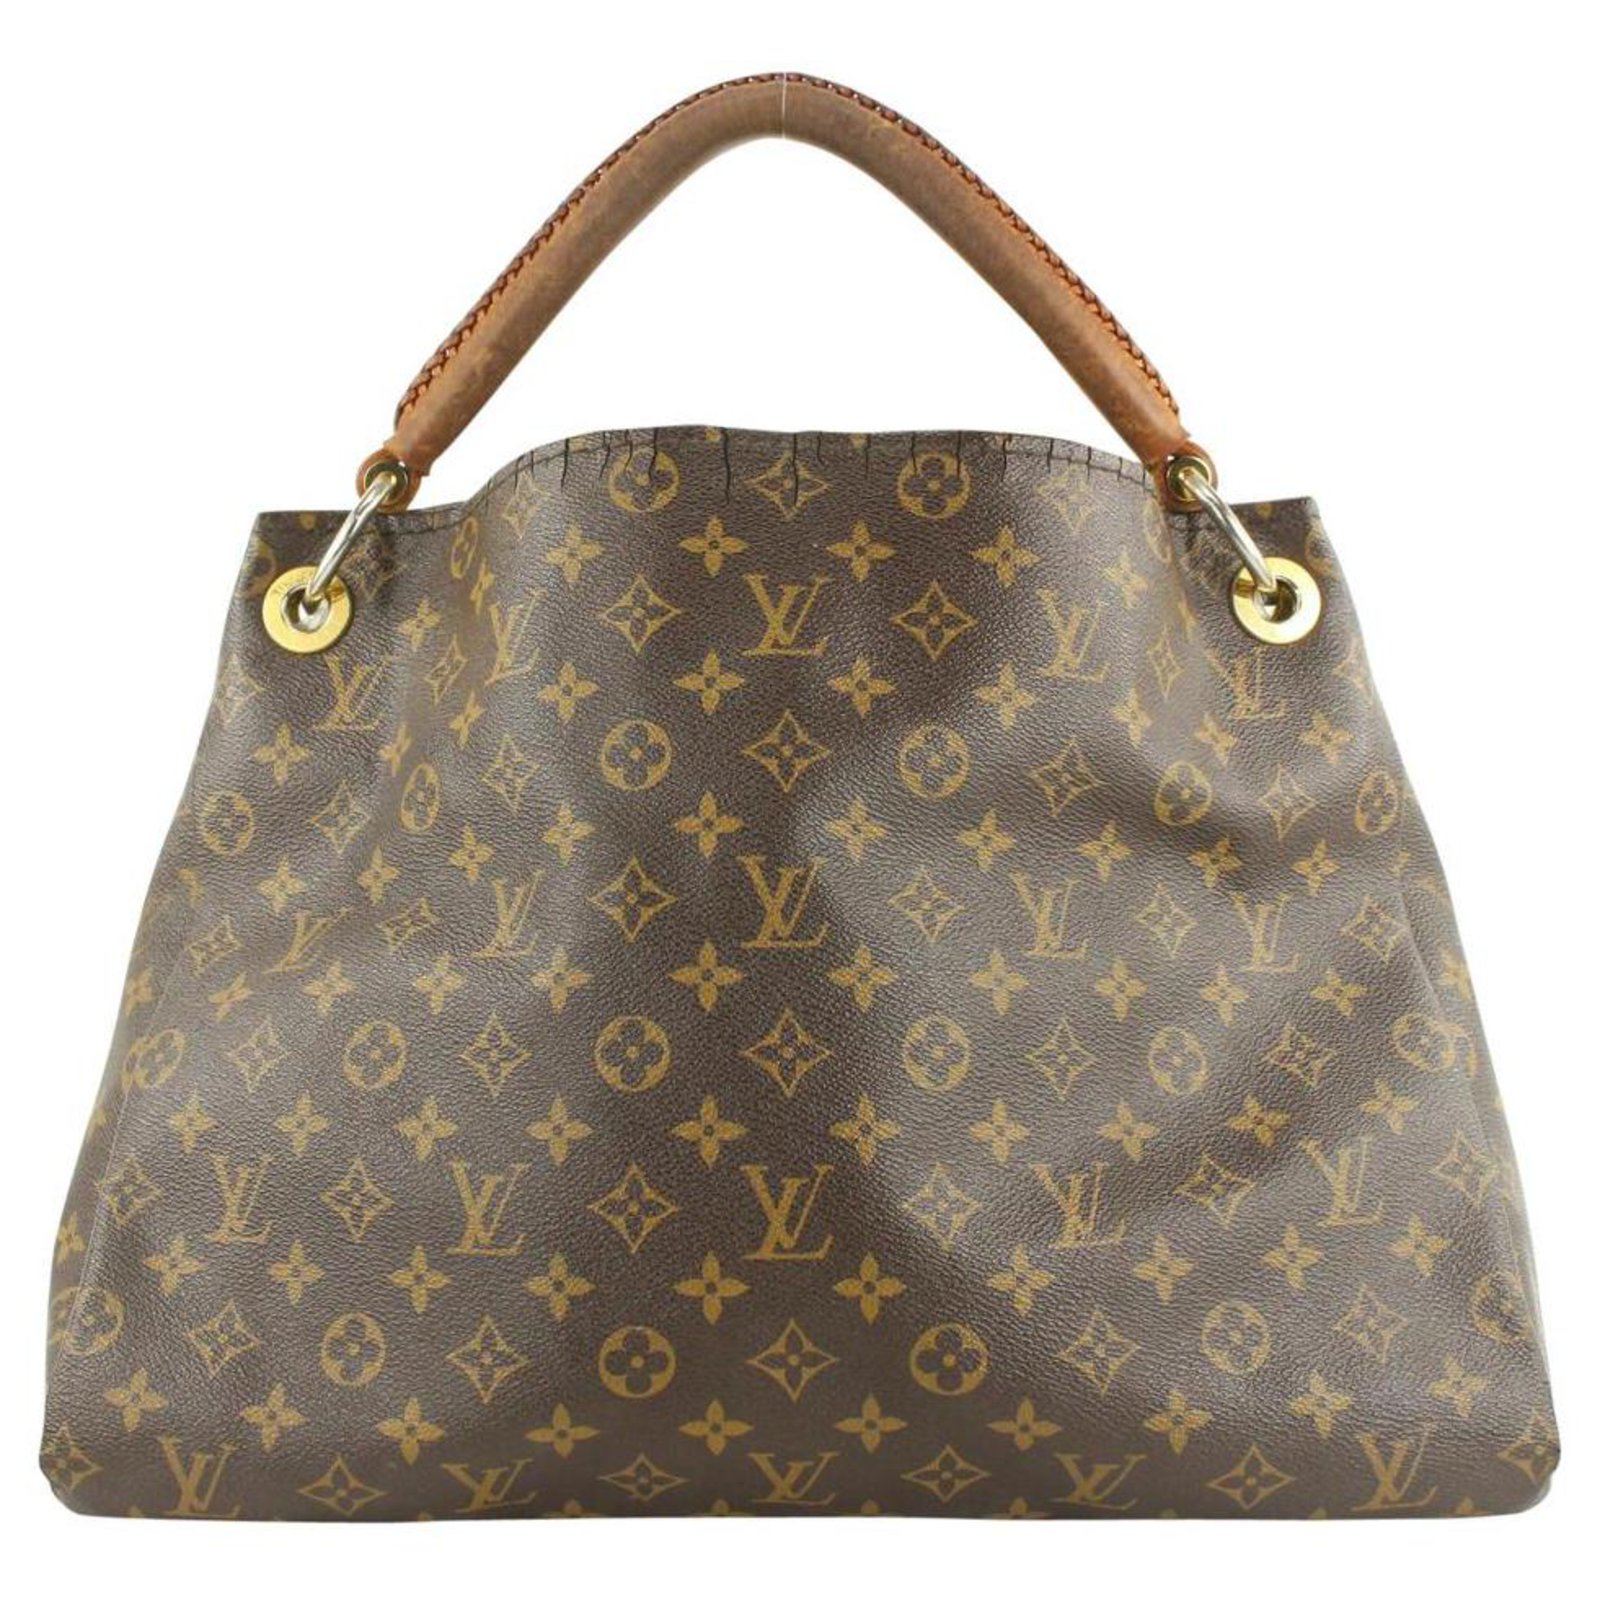 Louis Vuitton Artsy Large Hobo Shoulder Bag